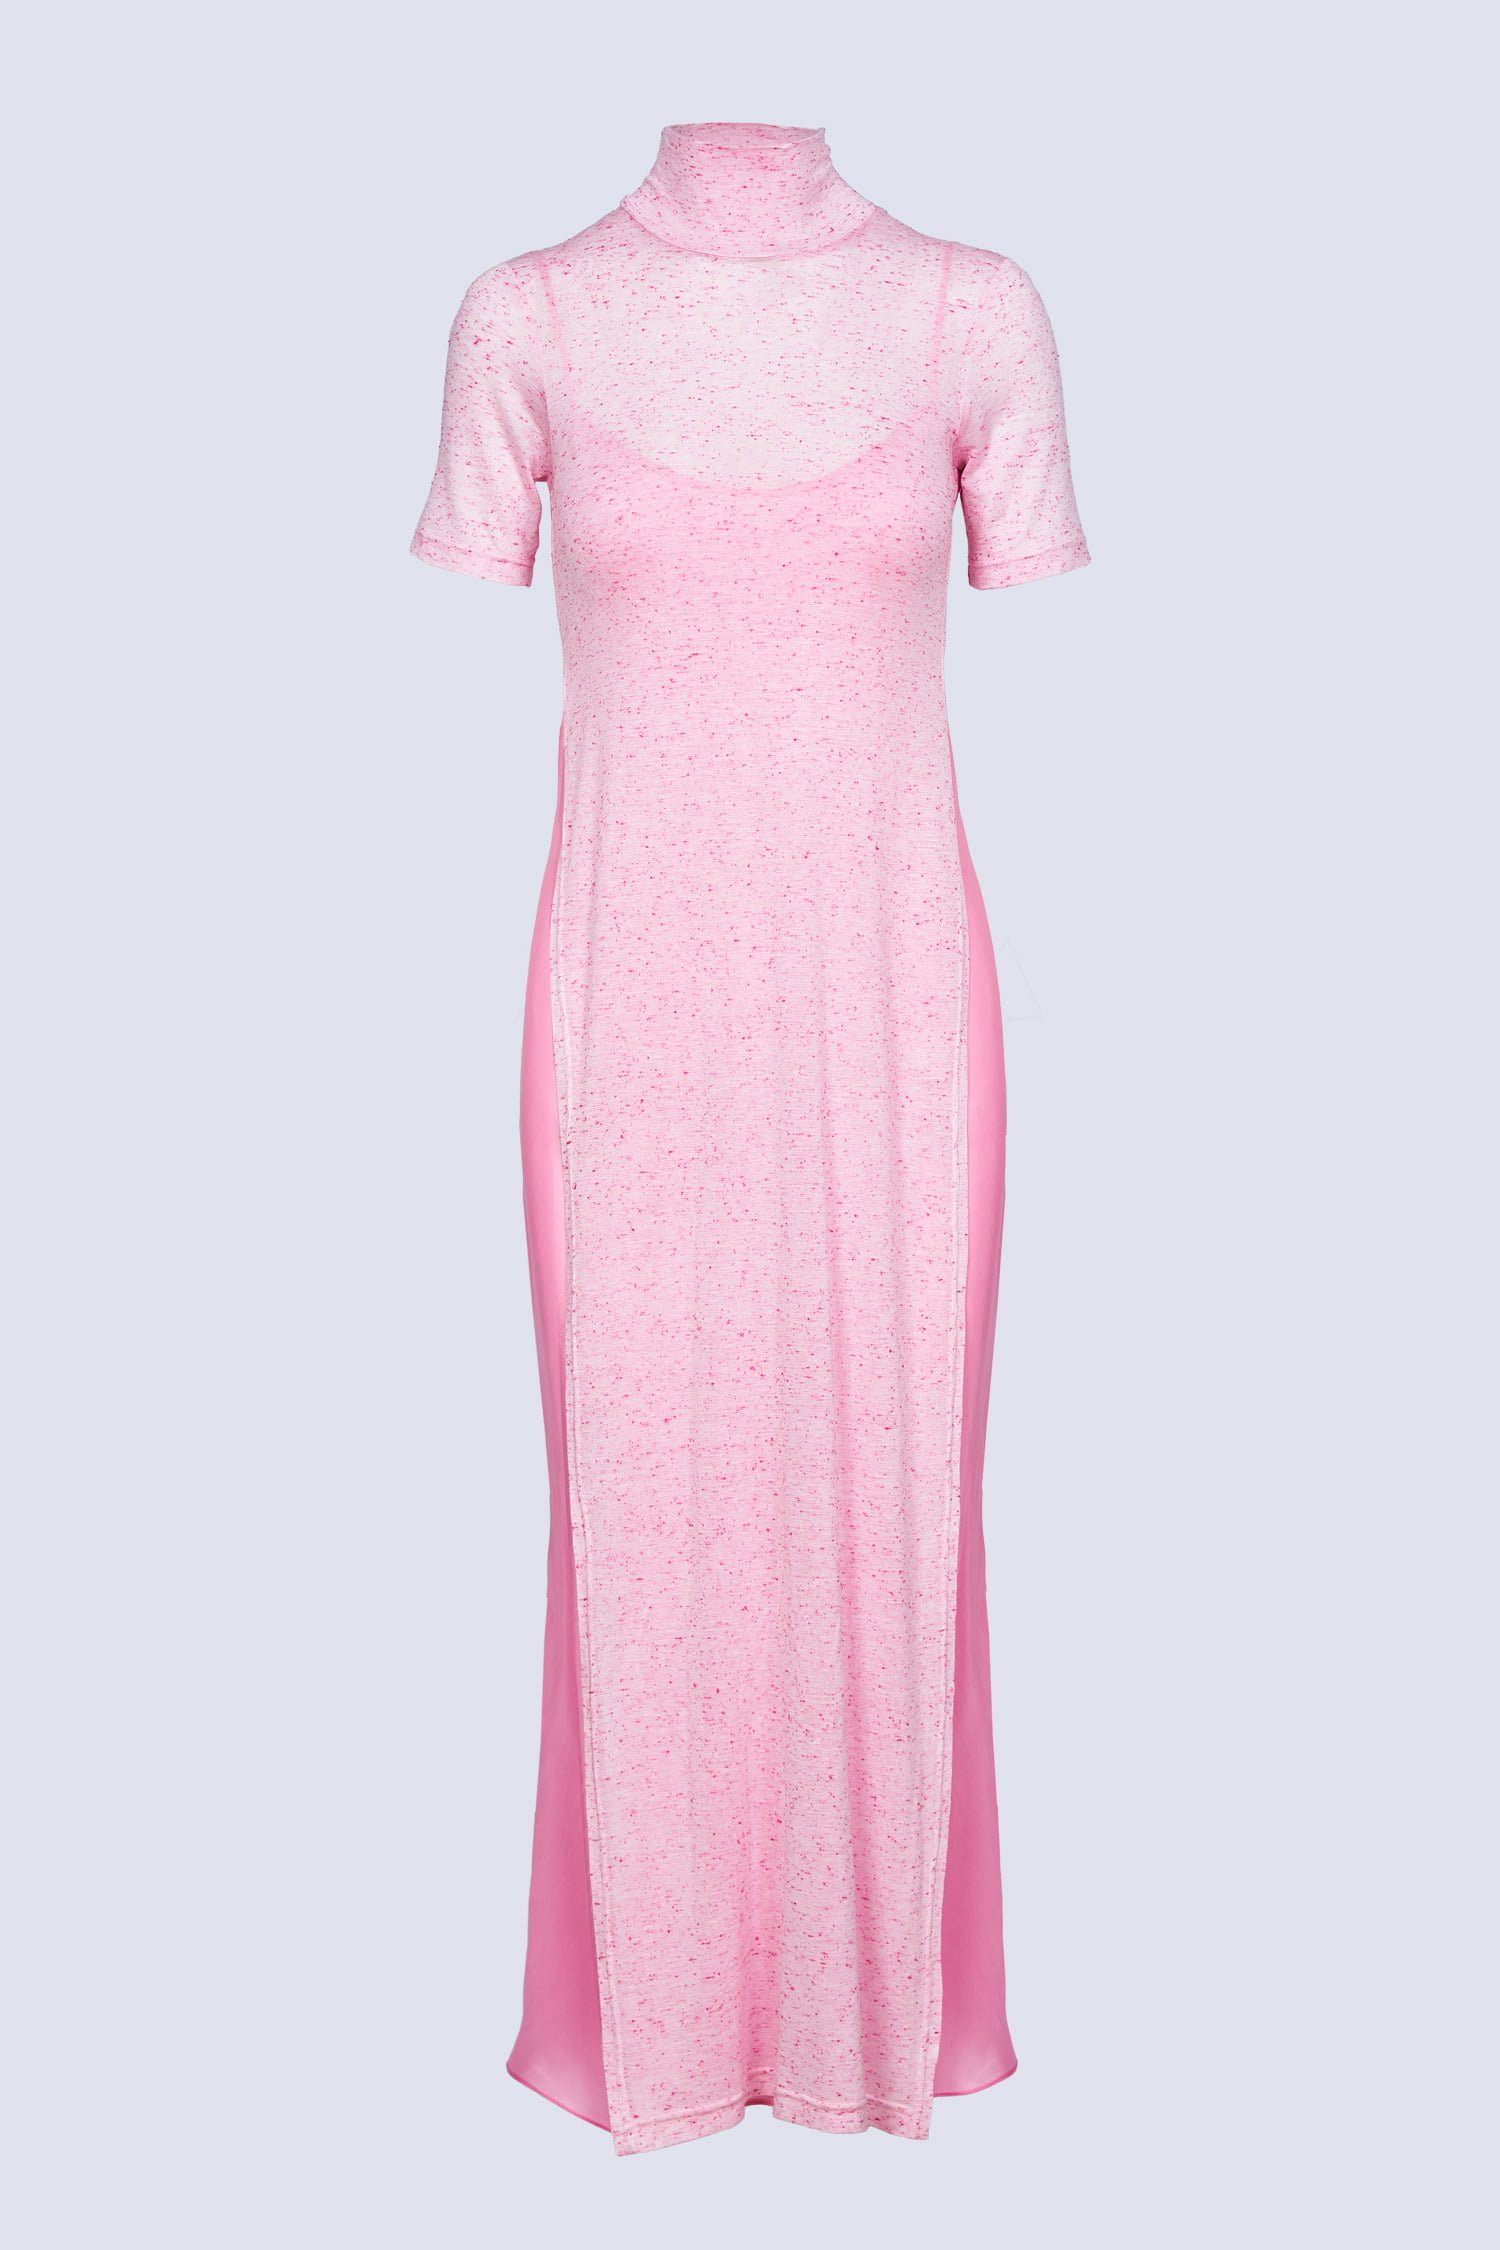 Acephala-SS22-packshot-pink-melange-layered-dress